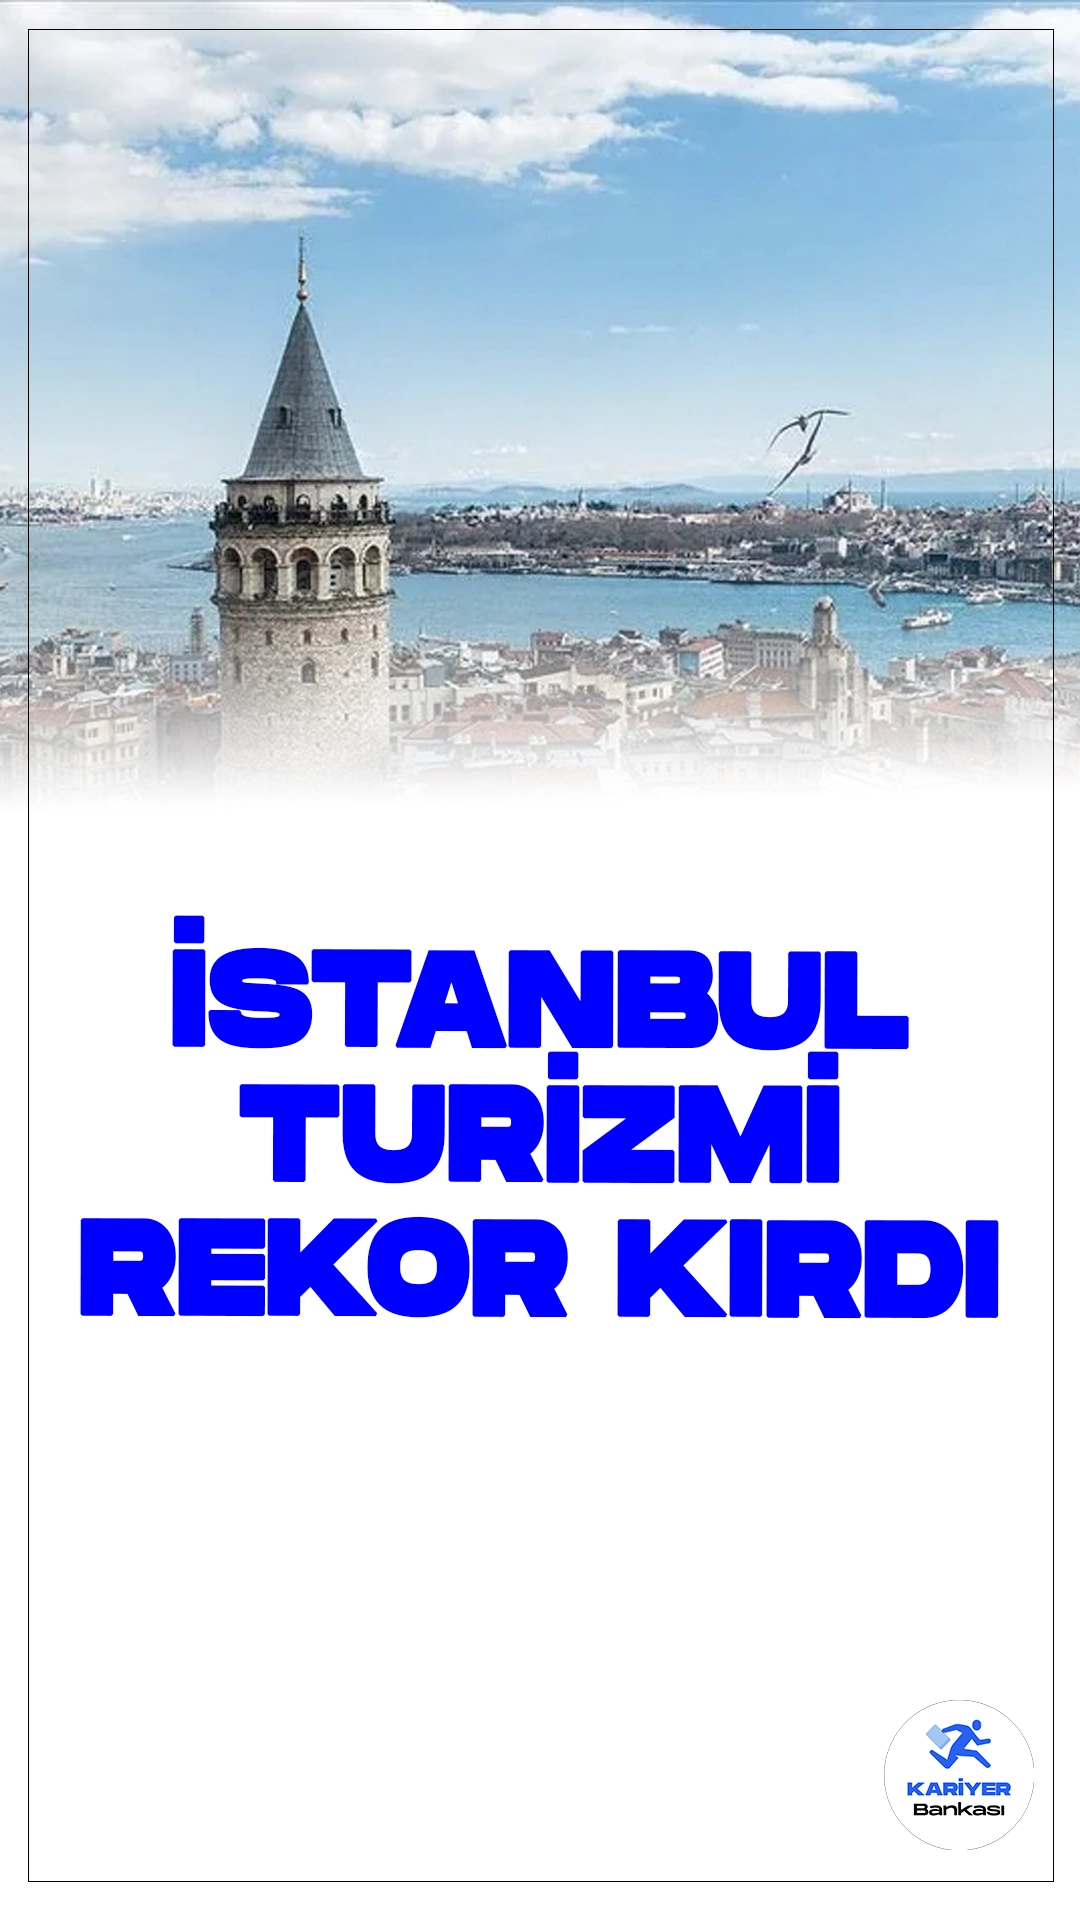 İstanbul Turizmi Rekor Kırdı: İlk 5 Ayda 7 Milyona Yakın Turist Ziyaret Etti.Dünya turizminin önemli merkezlerinden İstanbul, yılın ilk 5 ayında 6 milyon 923 bin 768 yabancı ziyaretçi ağırlayarak, tüm yıllara kıyasla hem mayıs ayı hem de 5 aylık dönemde rekor kırdı. Kültür ve Turizm Bakanlığının verilerine göre, İstanbul'a yılın ilk 5 ayında gelen yabancı ziyaretçi sayısı, bir önceki yılın aynı dönemine göre %10,31 artış gösterdi.